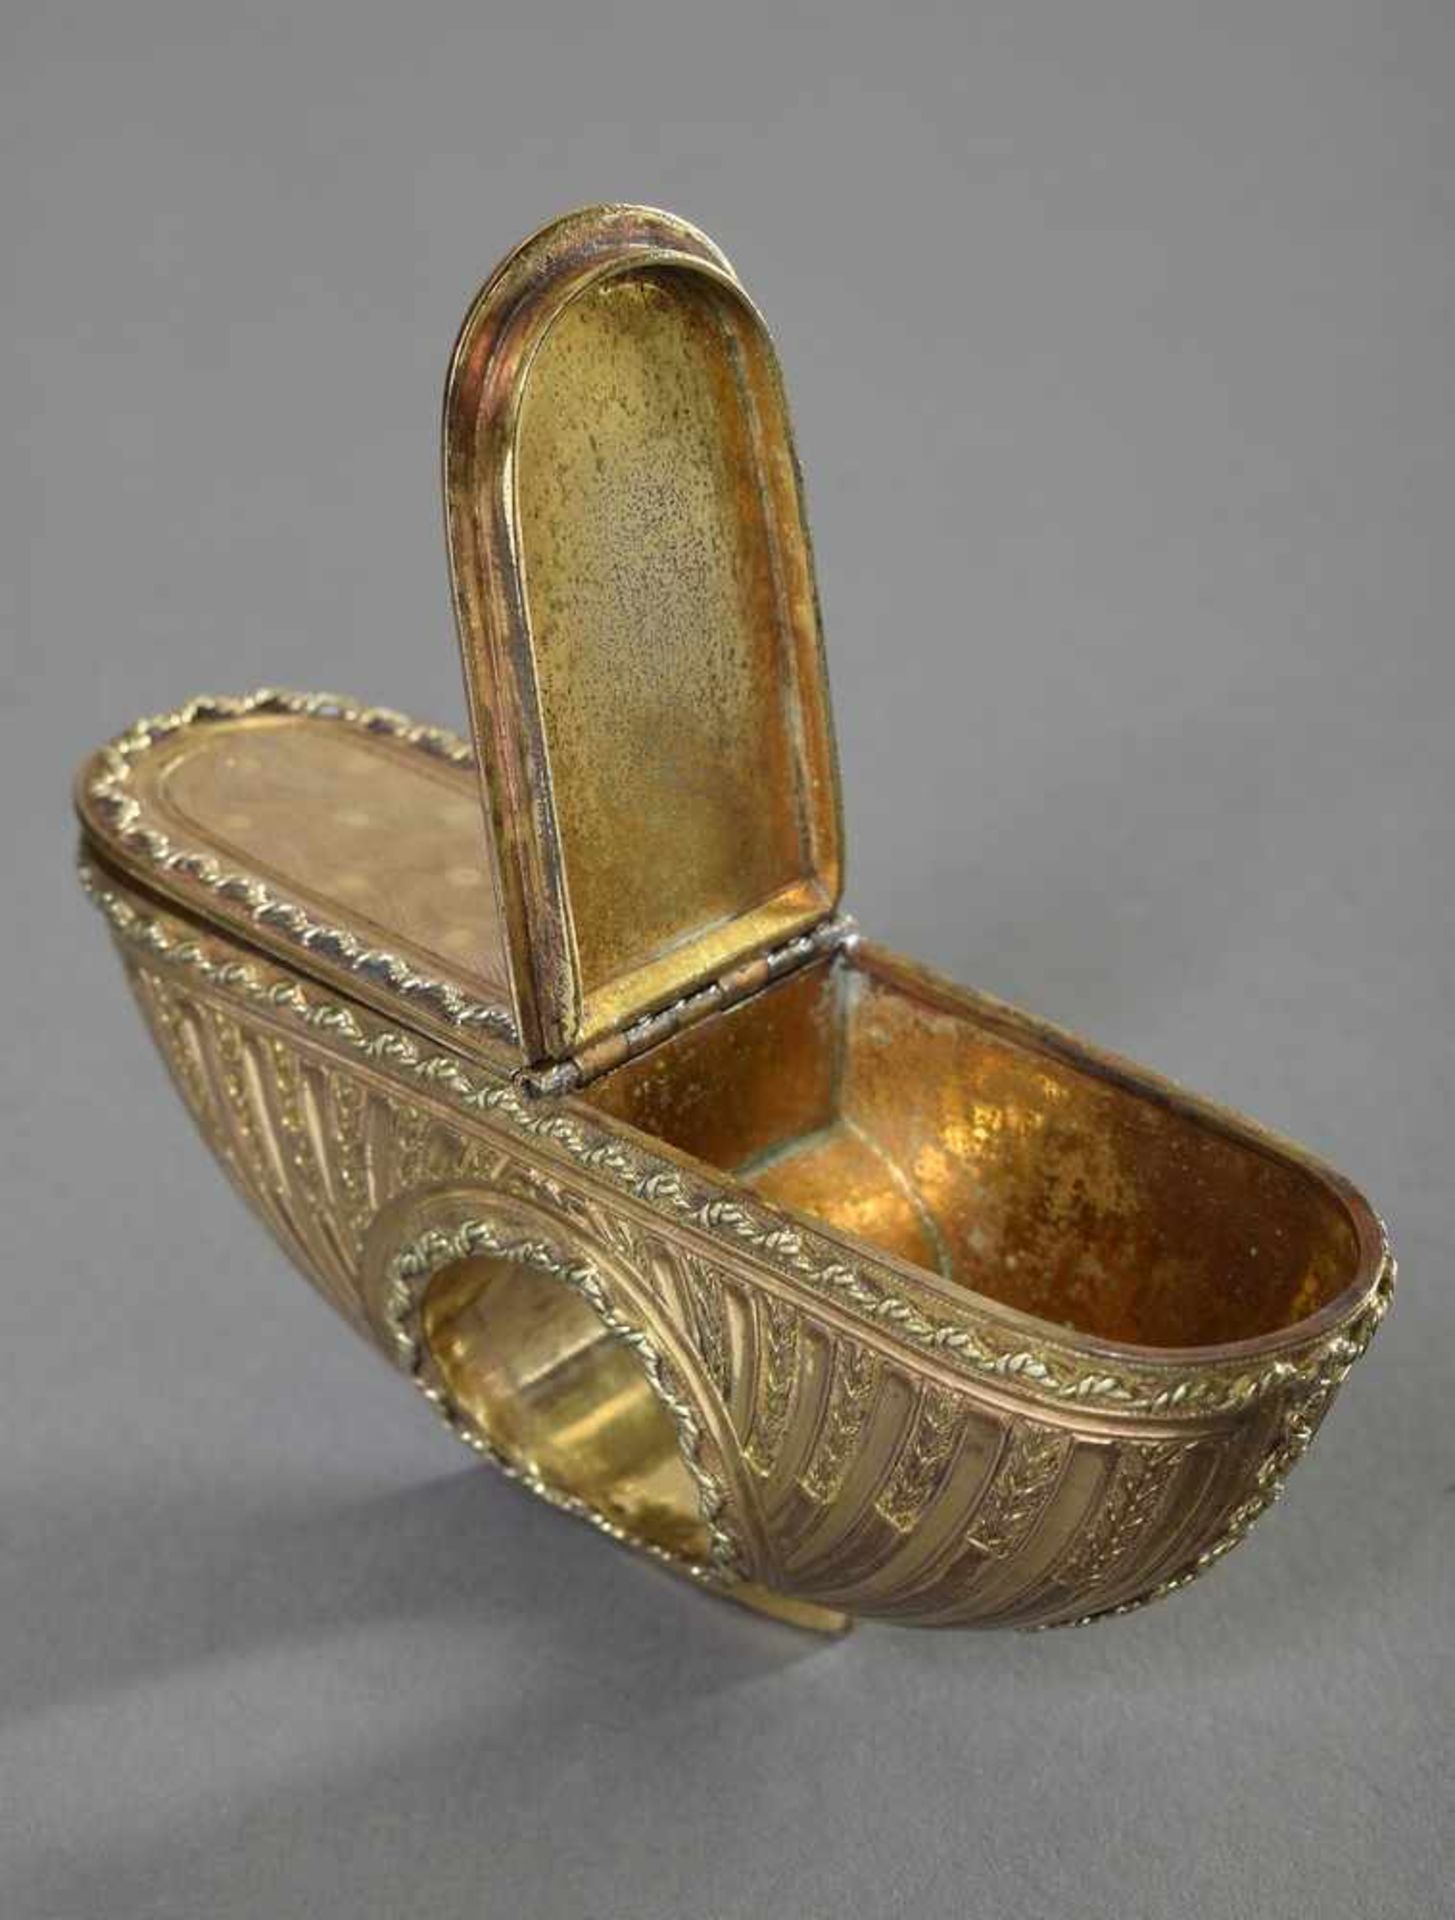 Guillochierter Schnupftabak Ring mit zwei Fächern im Louis XVI Stil, vergoldete Bronze, 10x4,